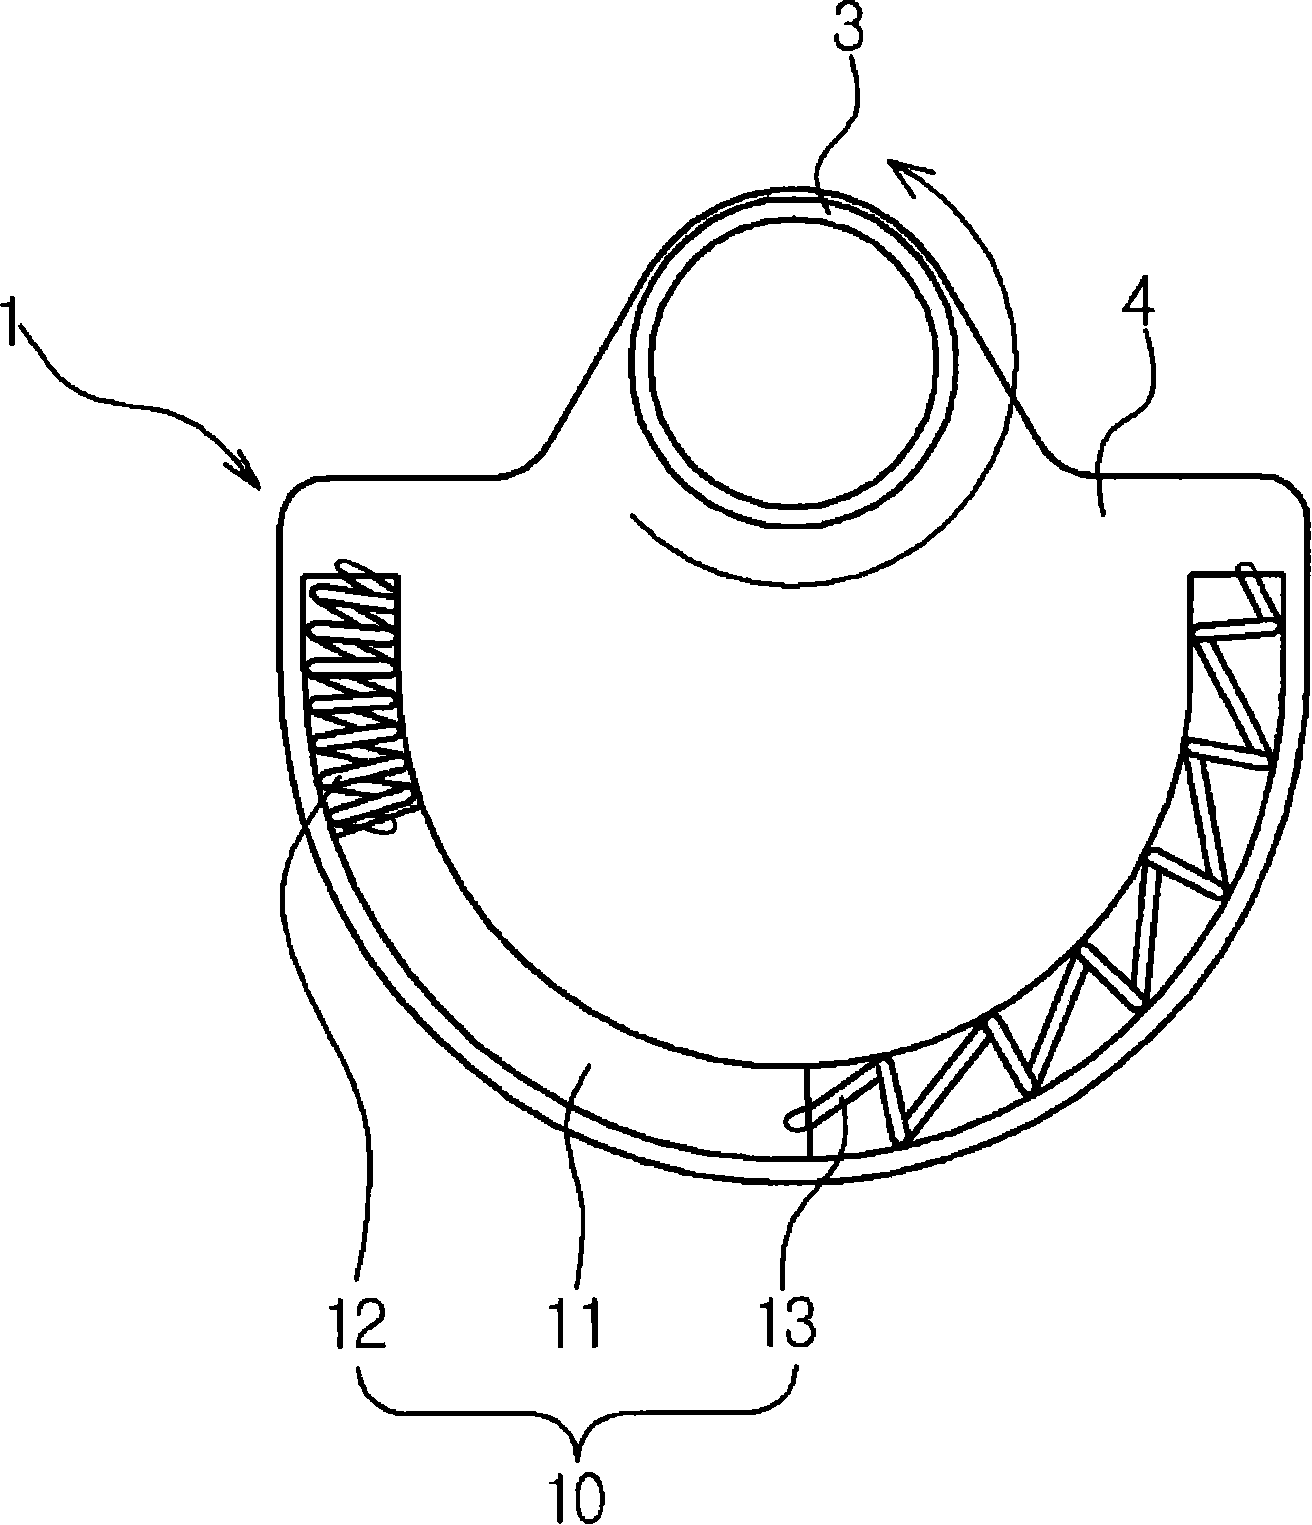 Crankshaft of reciprocal compressor